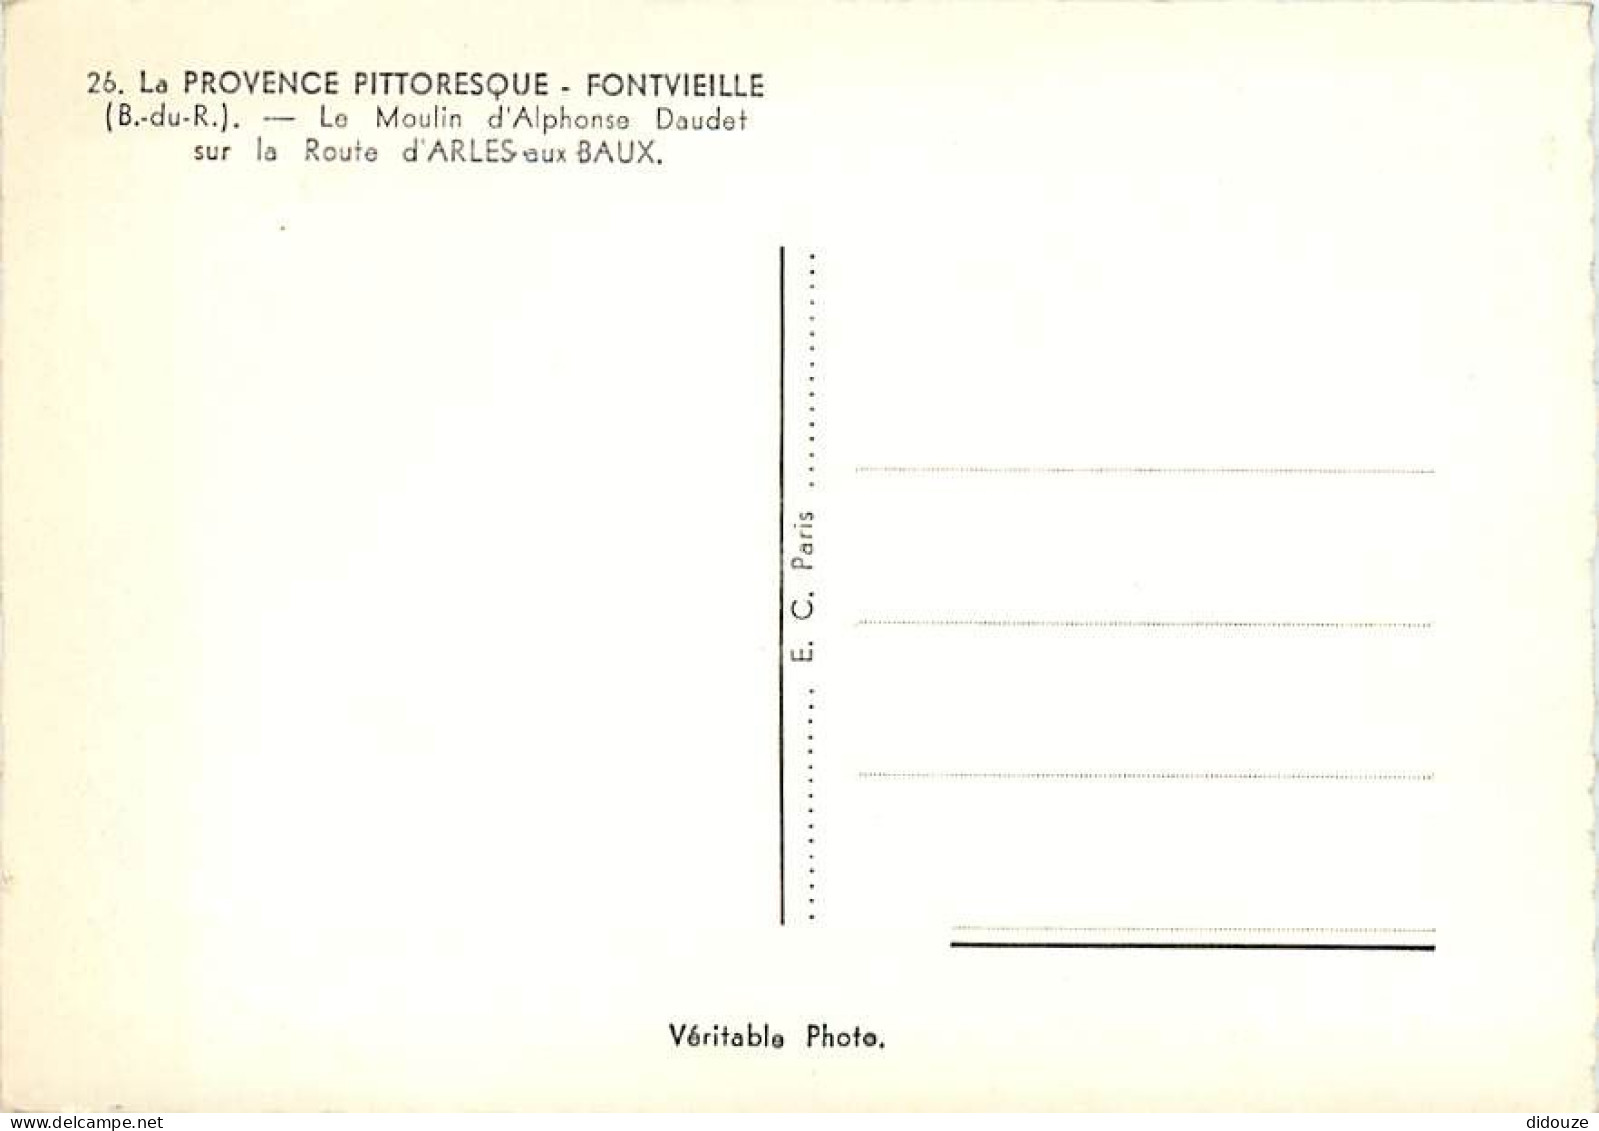 13 - Fontvieille - Le Moulin D'Alphonse Daudet - Mention Photographie Véritable - CPSM Grand Format - Carte Neuve - Voir - Fontvieille